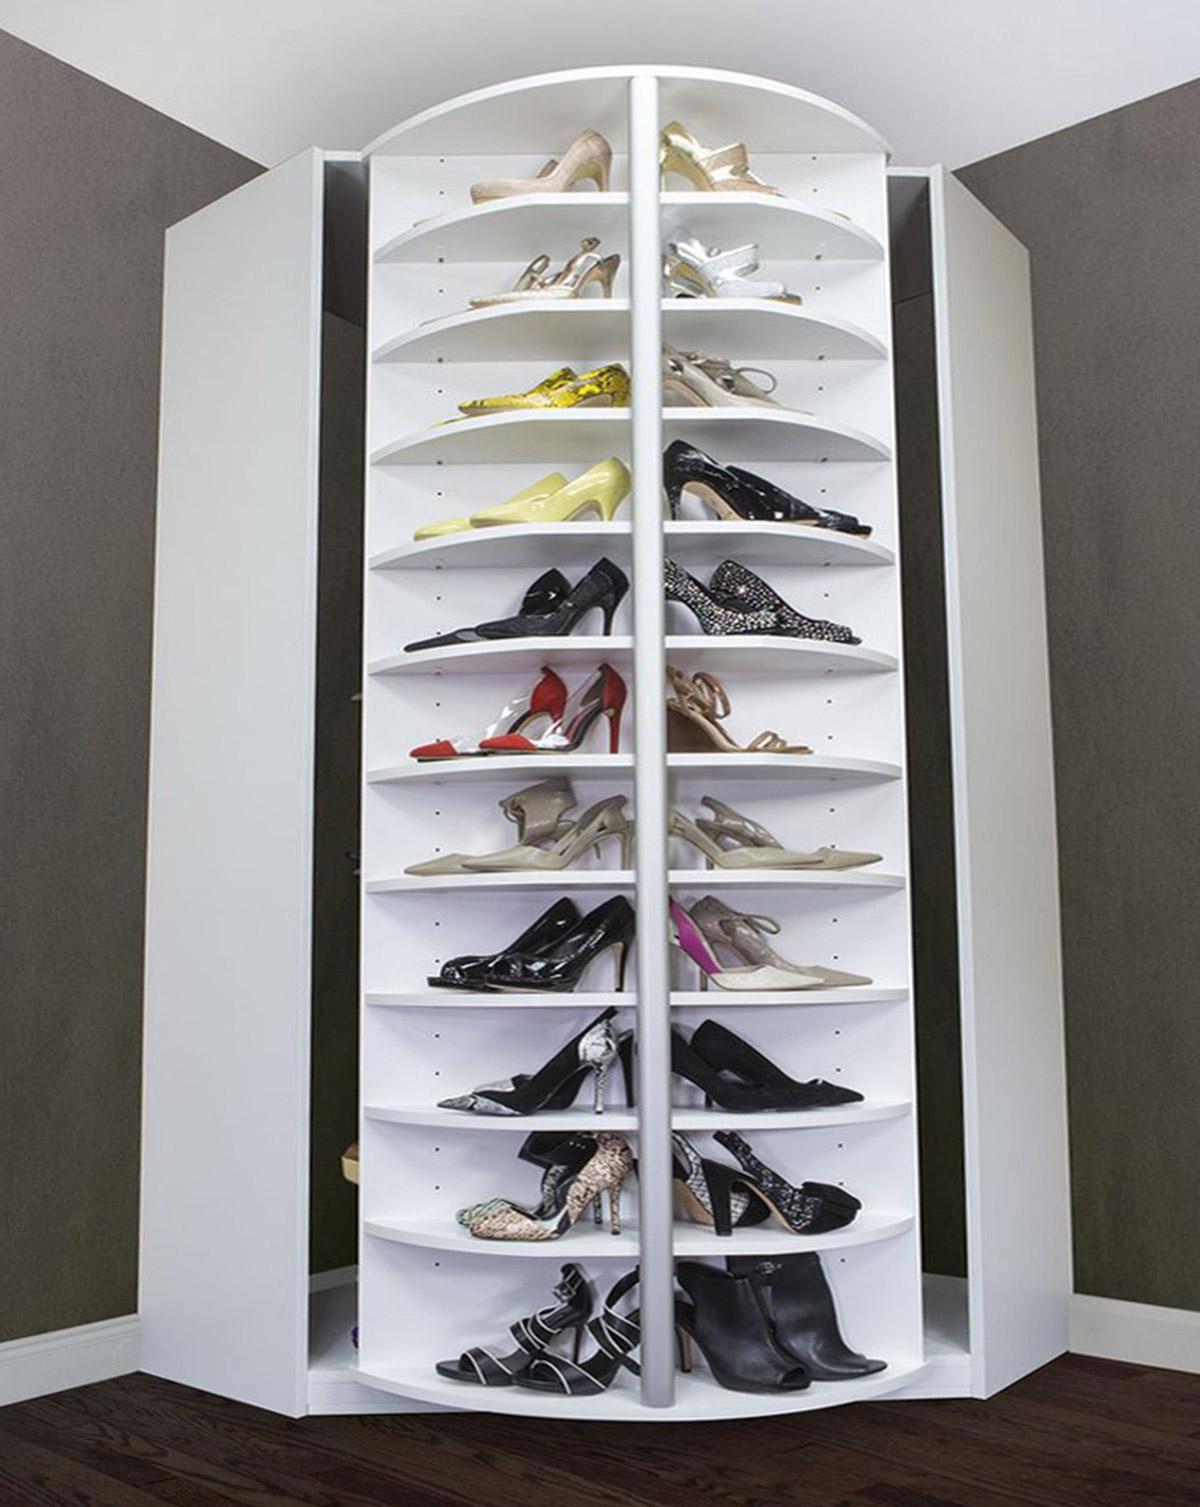 Tủ giày xoay thông minh hiện đại có thiết kế độc đáo